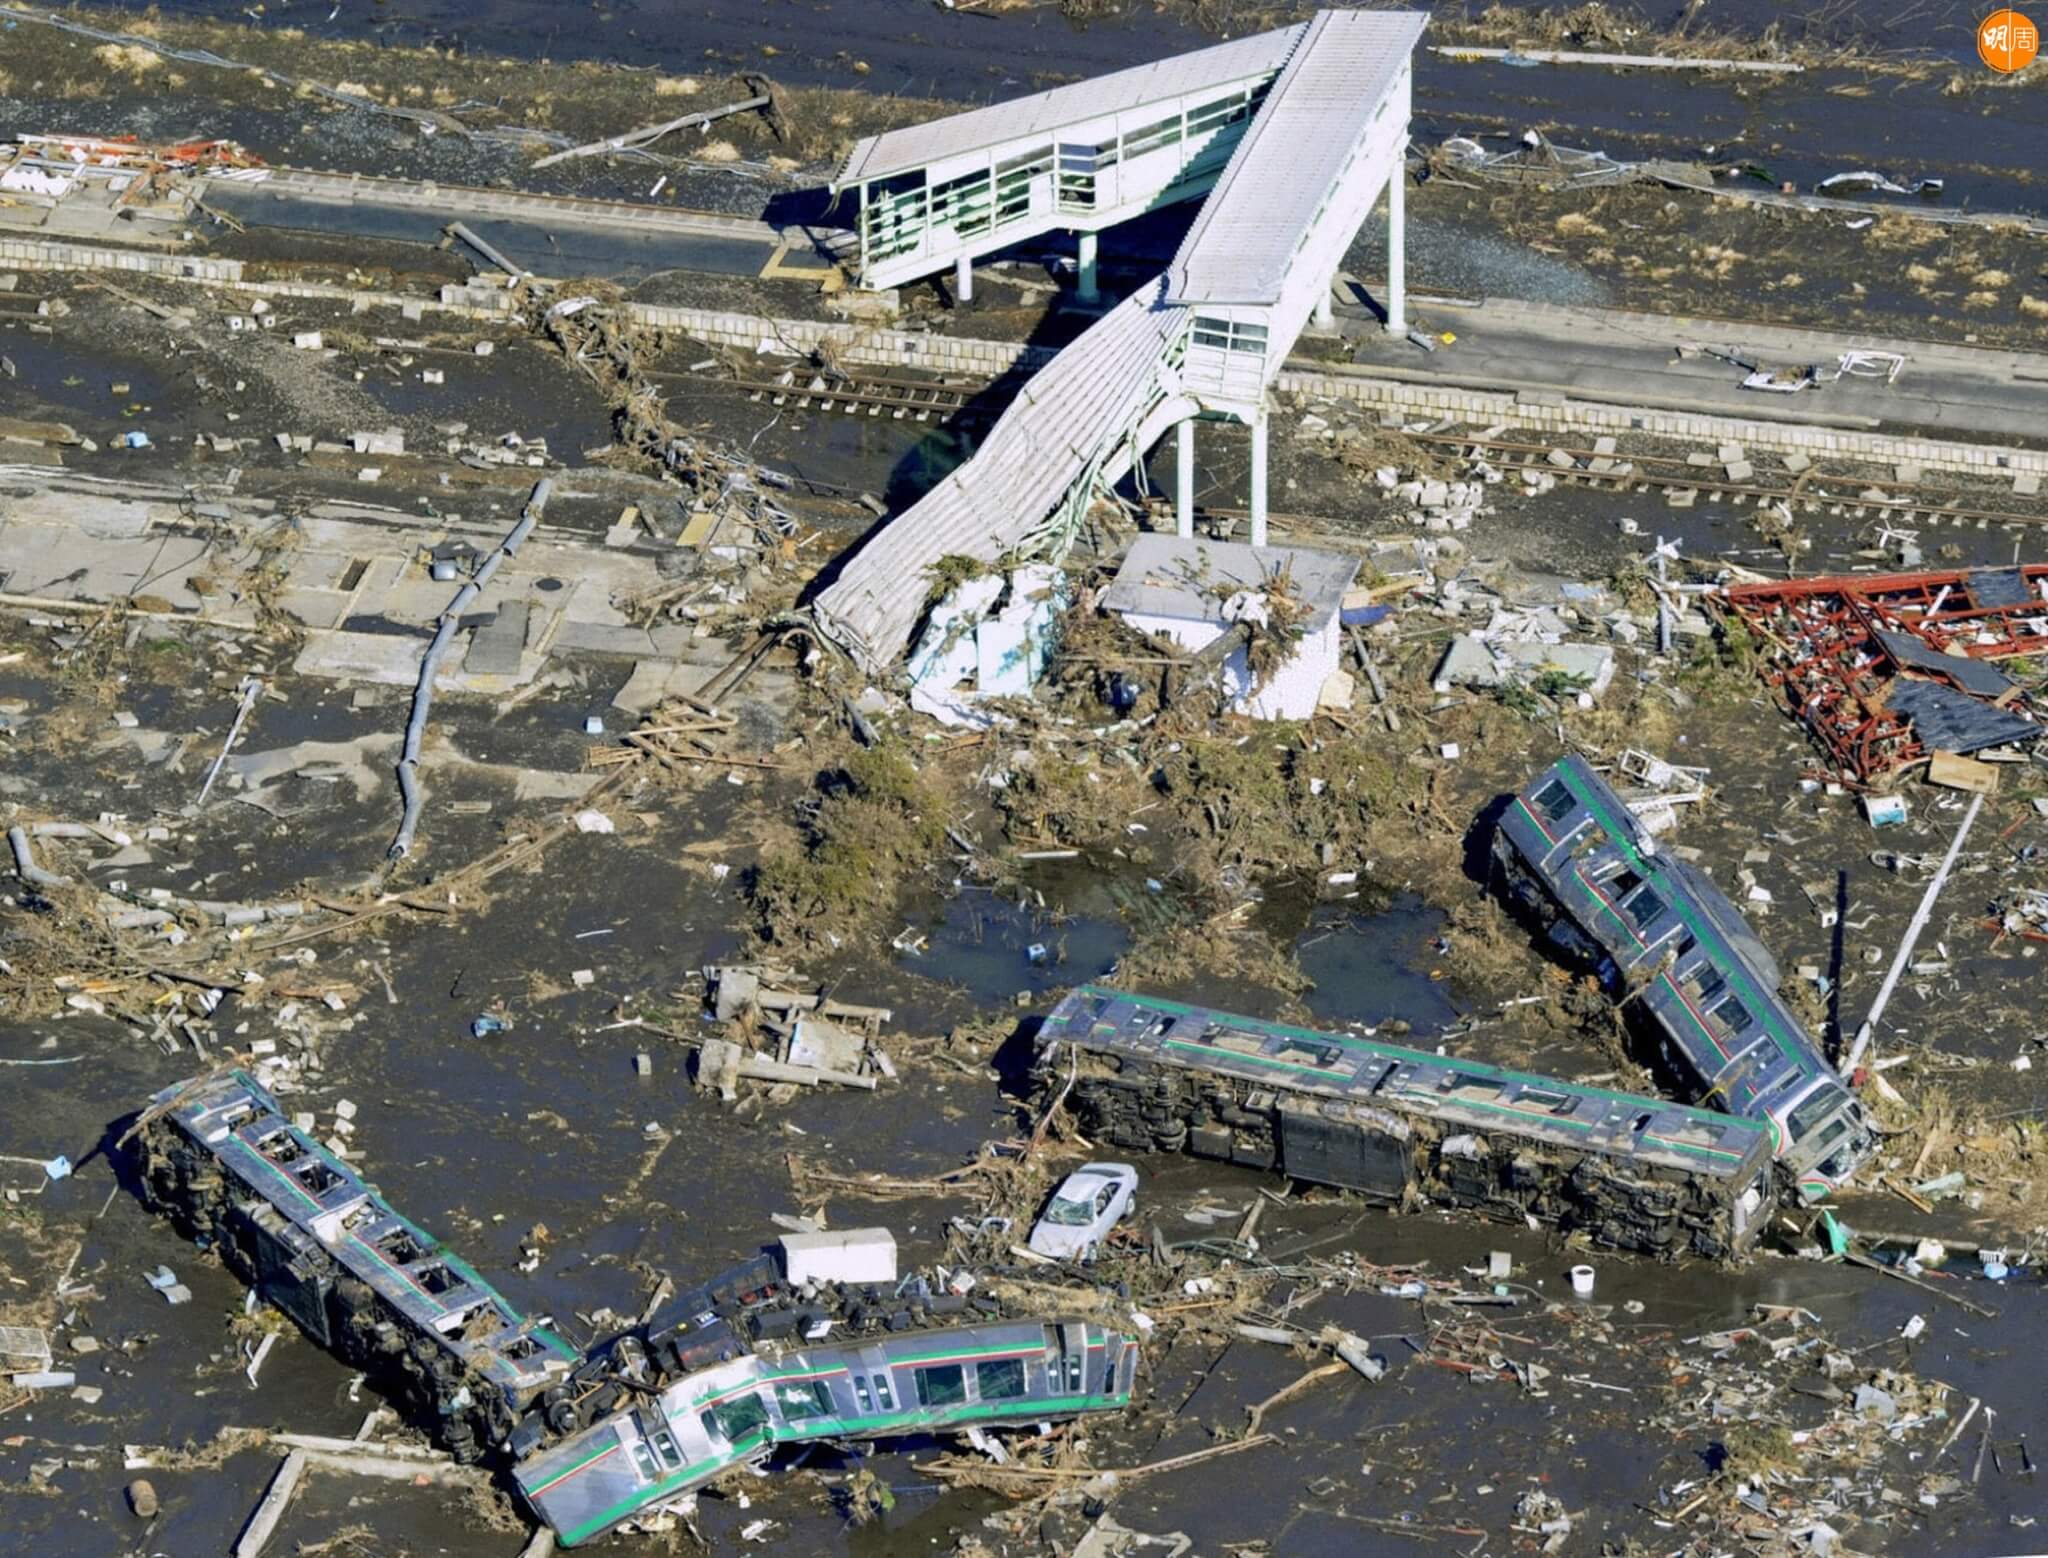 JON1031257. Vagones de un tren se ven en el suelo después de volcarse al ser barridos por el tsunami en la ciudad de Shinchi en Prefectura de Fukushima, Japón. Más de 1.000 personas están desaparecidas después del gran terremoto del viernes y el posterior tsunami en el noreste de Japón. XINHUA-NOTIMEX/FOTO/KYODO/COR/DIS/ (Photo by KYODO / NOTIMEX / Notimex via AFP)